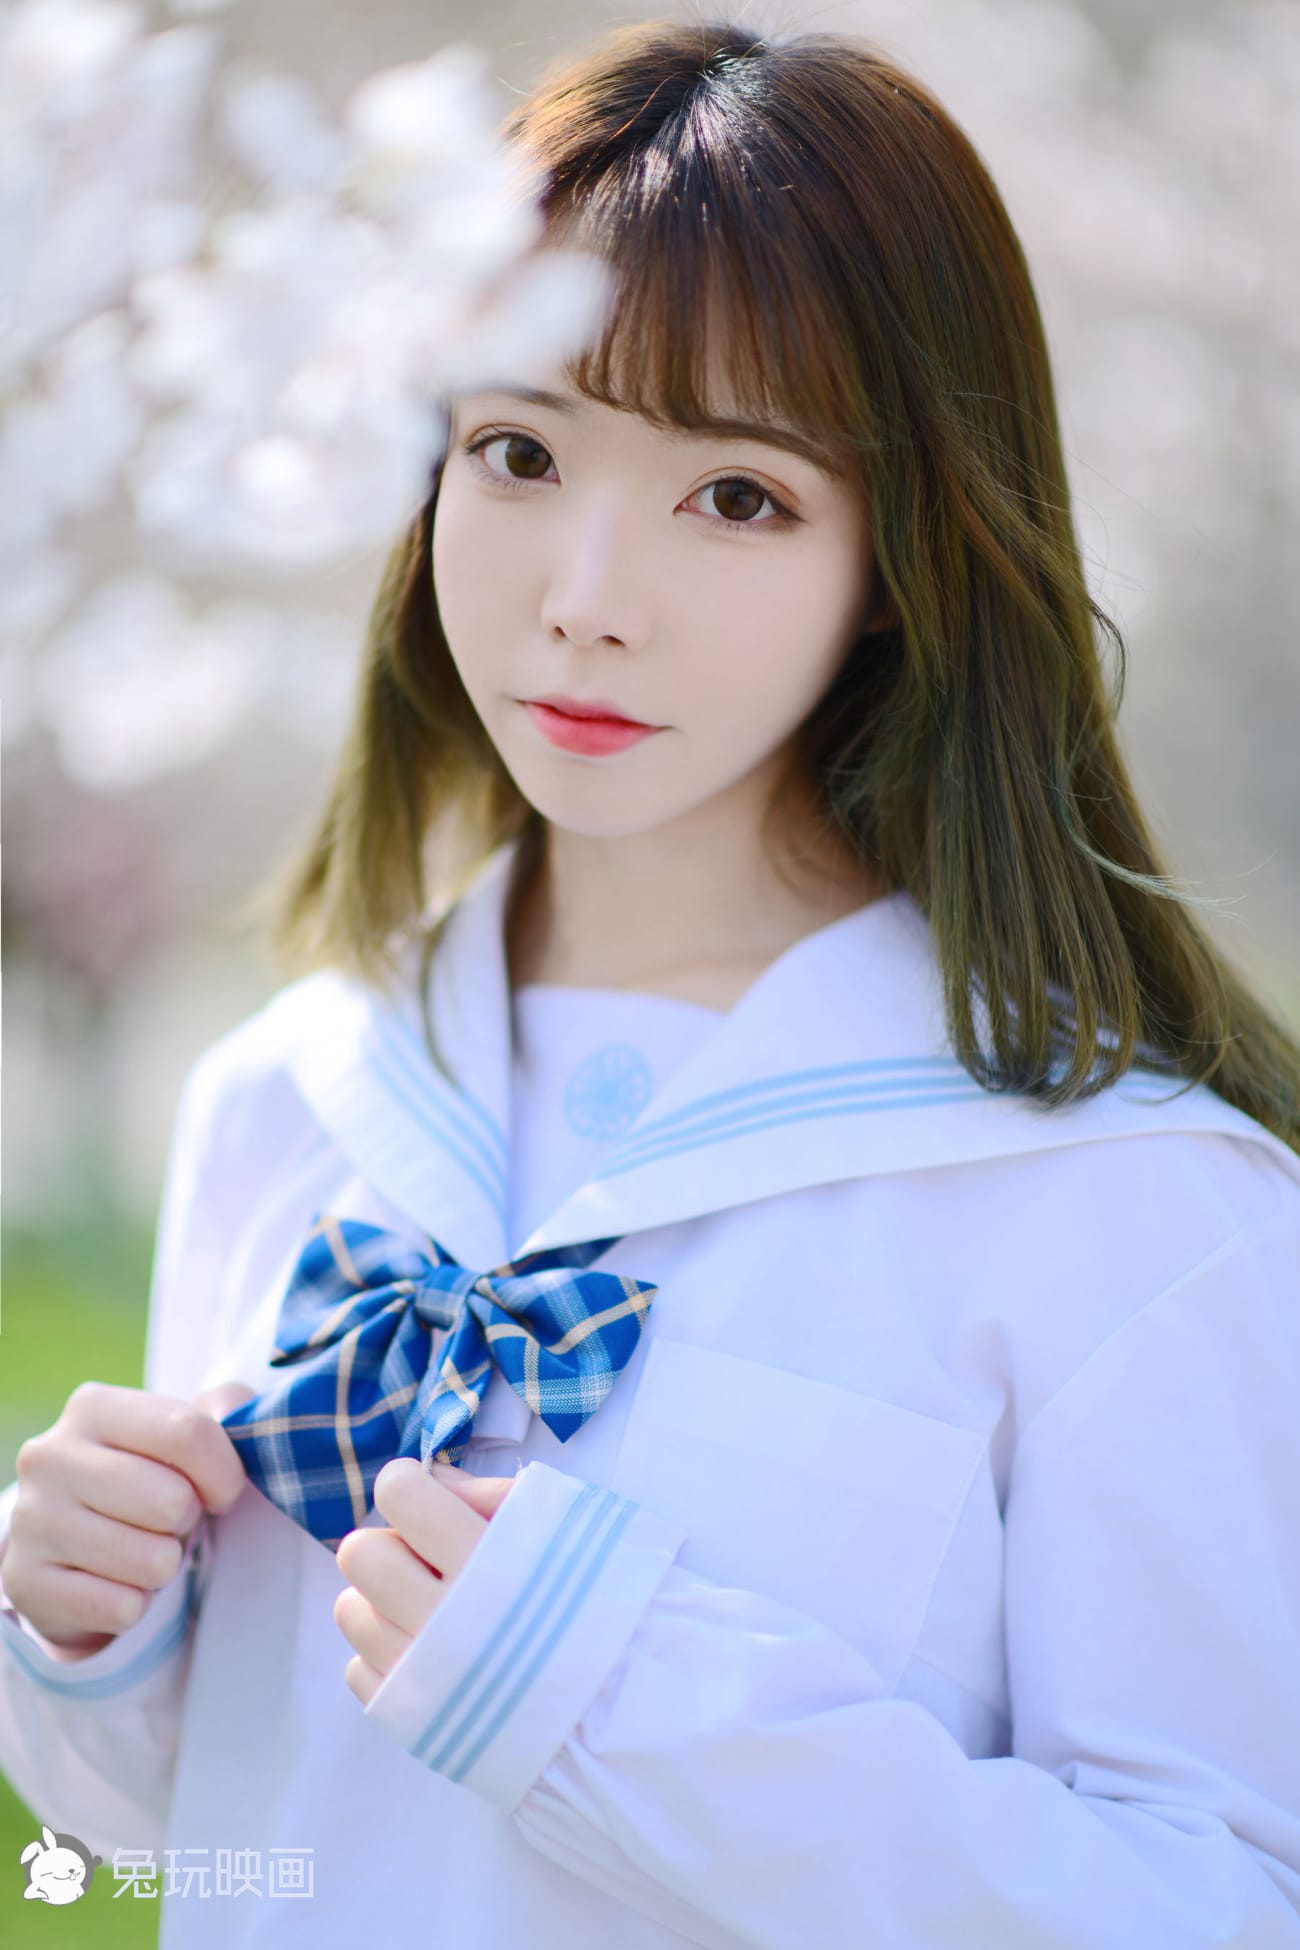 清纯少女JK制服搭配白色丝袜樱花场景户外写真